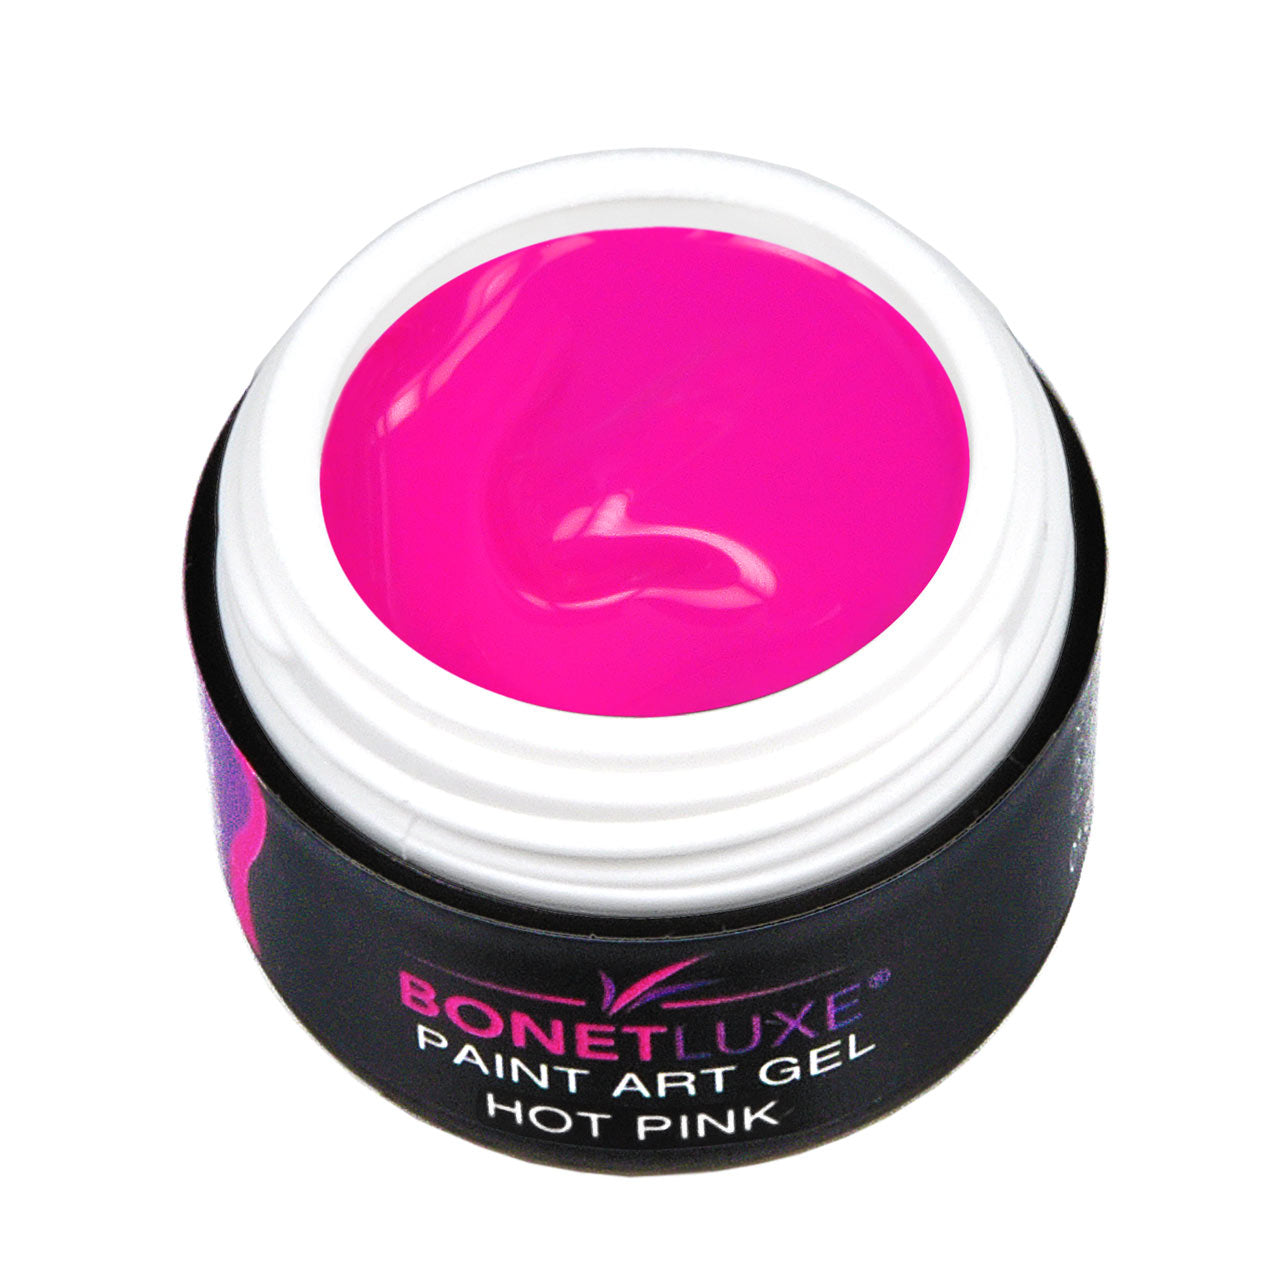 Bonetluxe Paint Art Gel Hot Pink